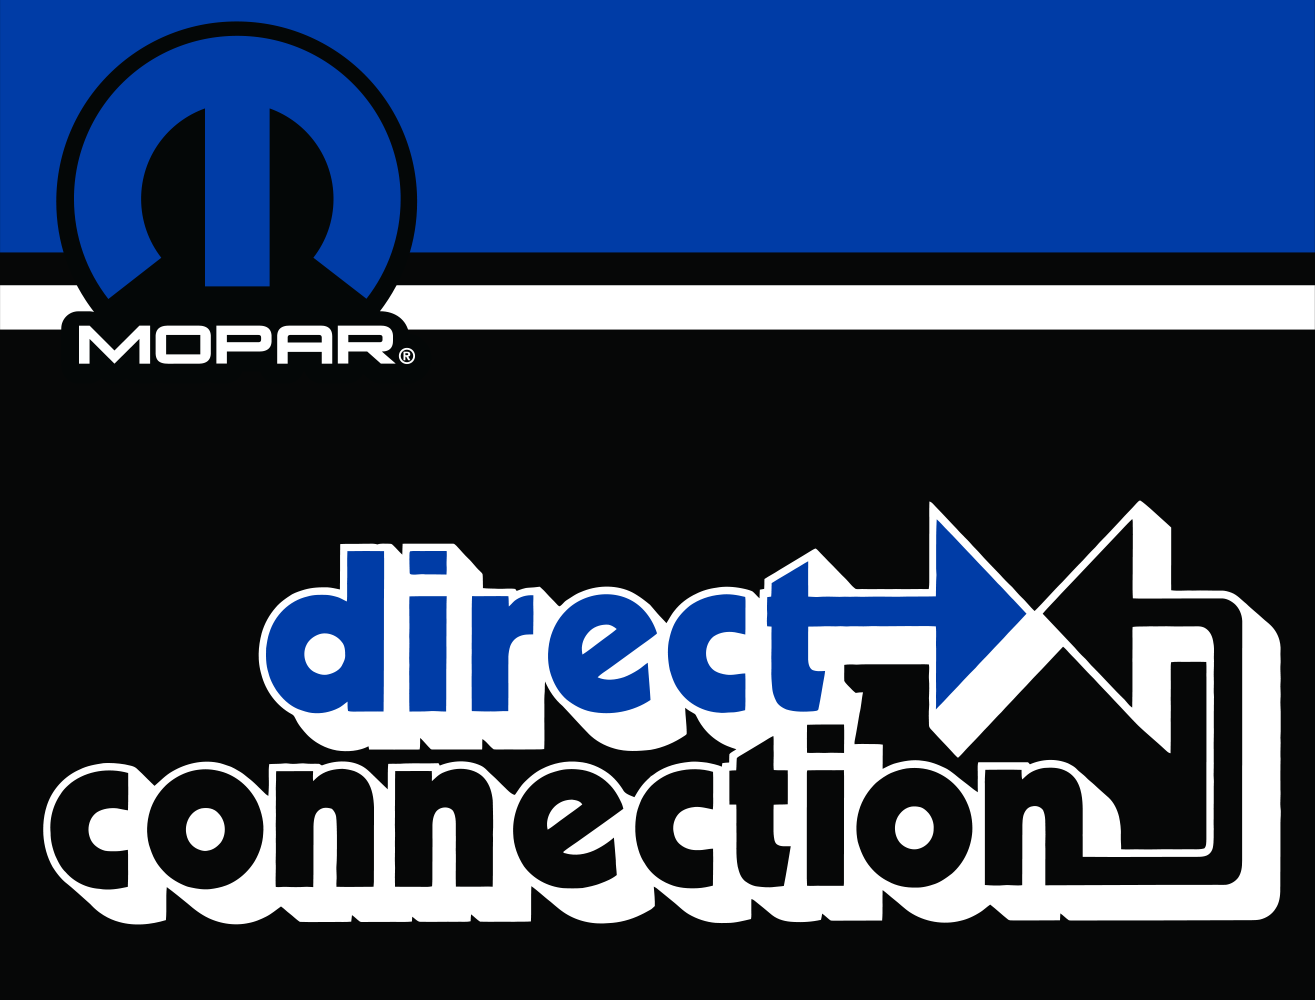 Metal Sign - Mopar Direct Connection